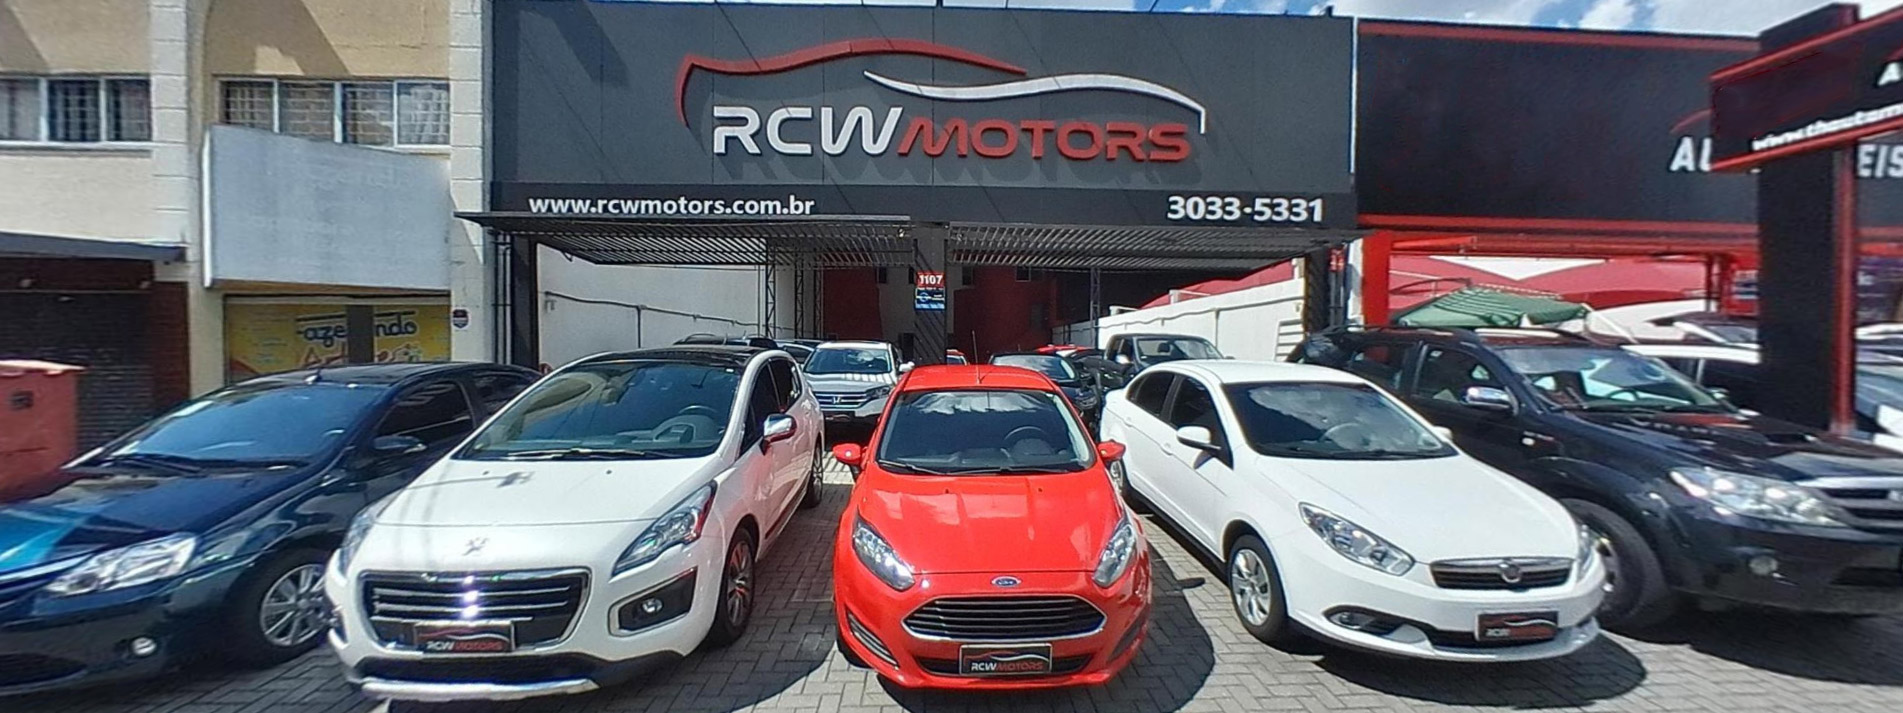 RCW Motors